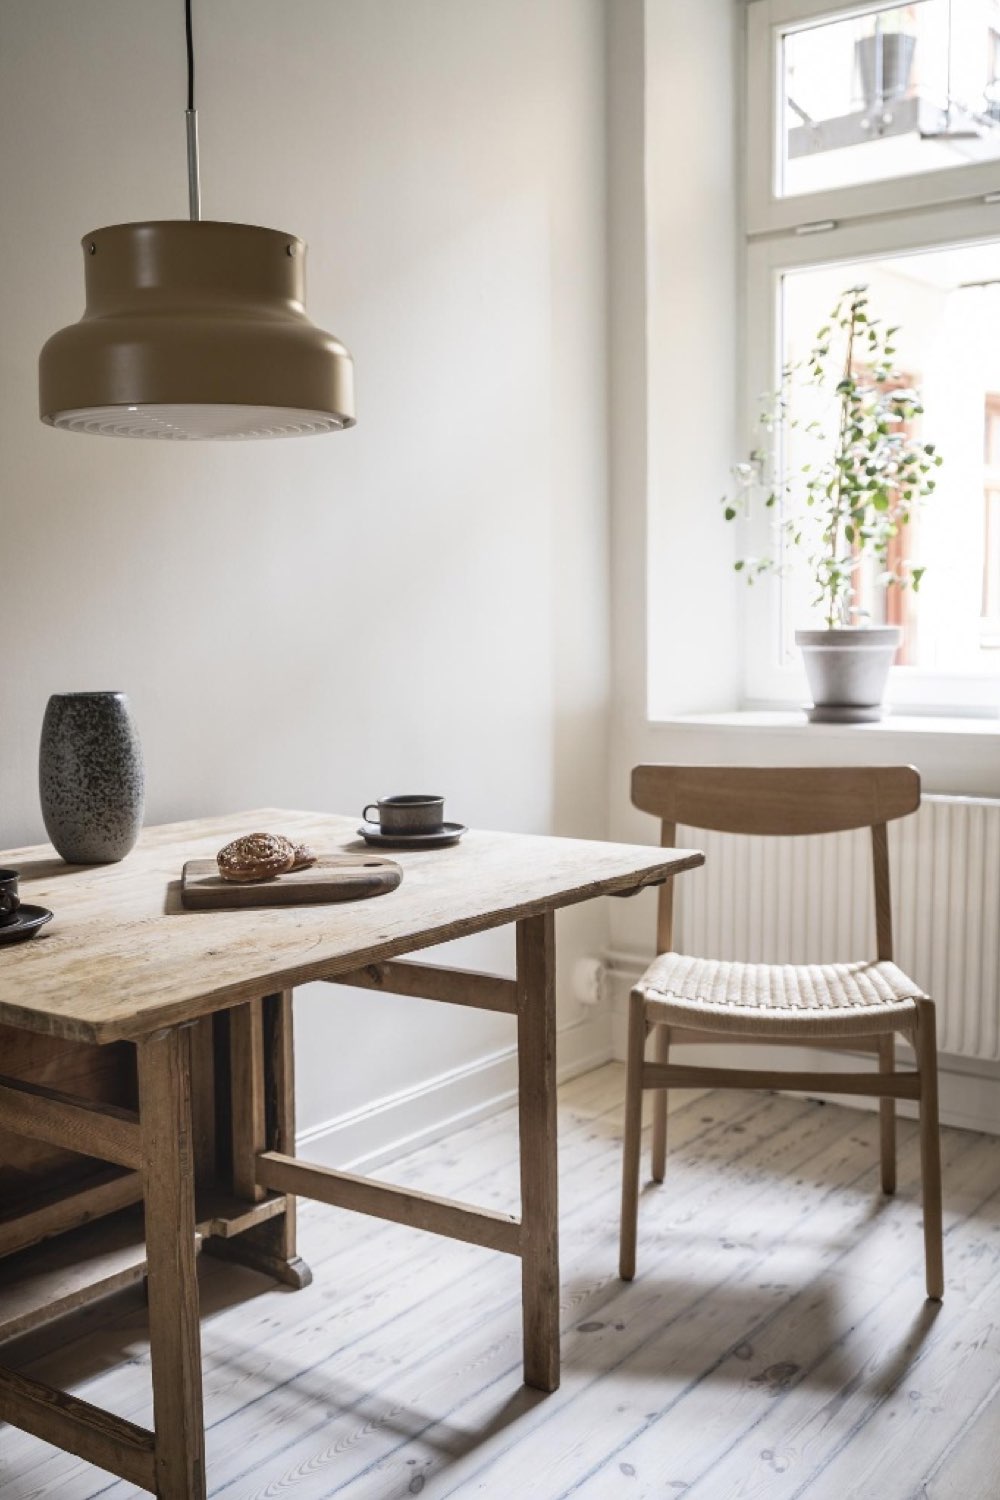 decor maison minimaliste et cosy coin repas cuisine table pliante en bois chaise design scandinave